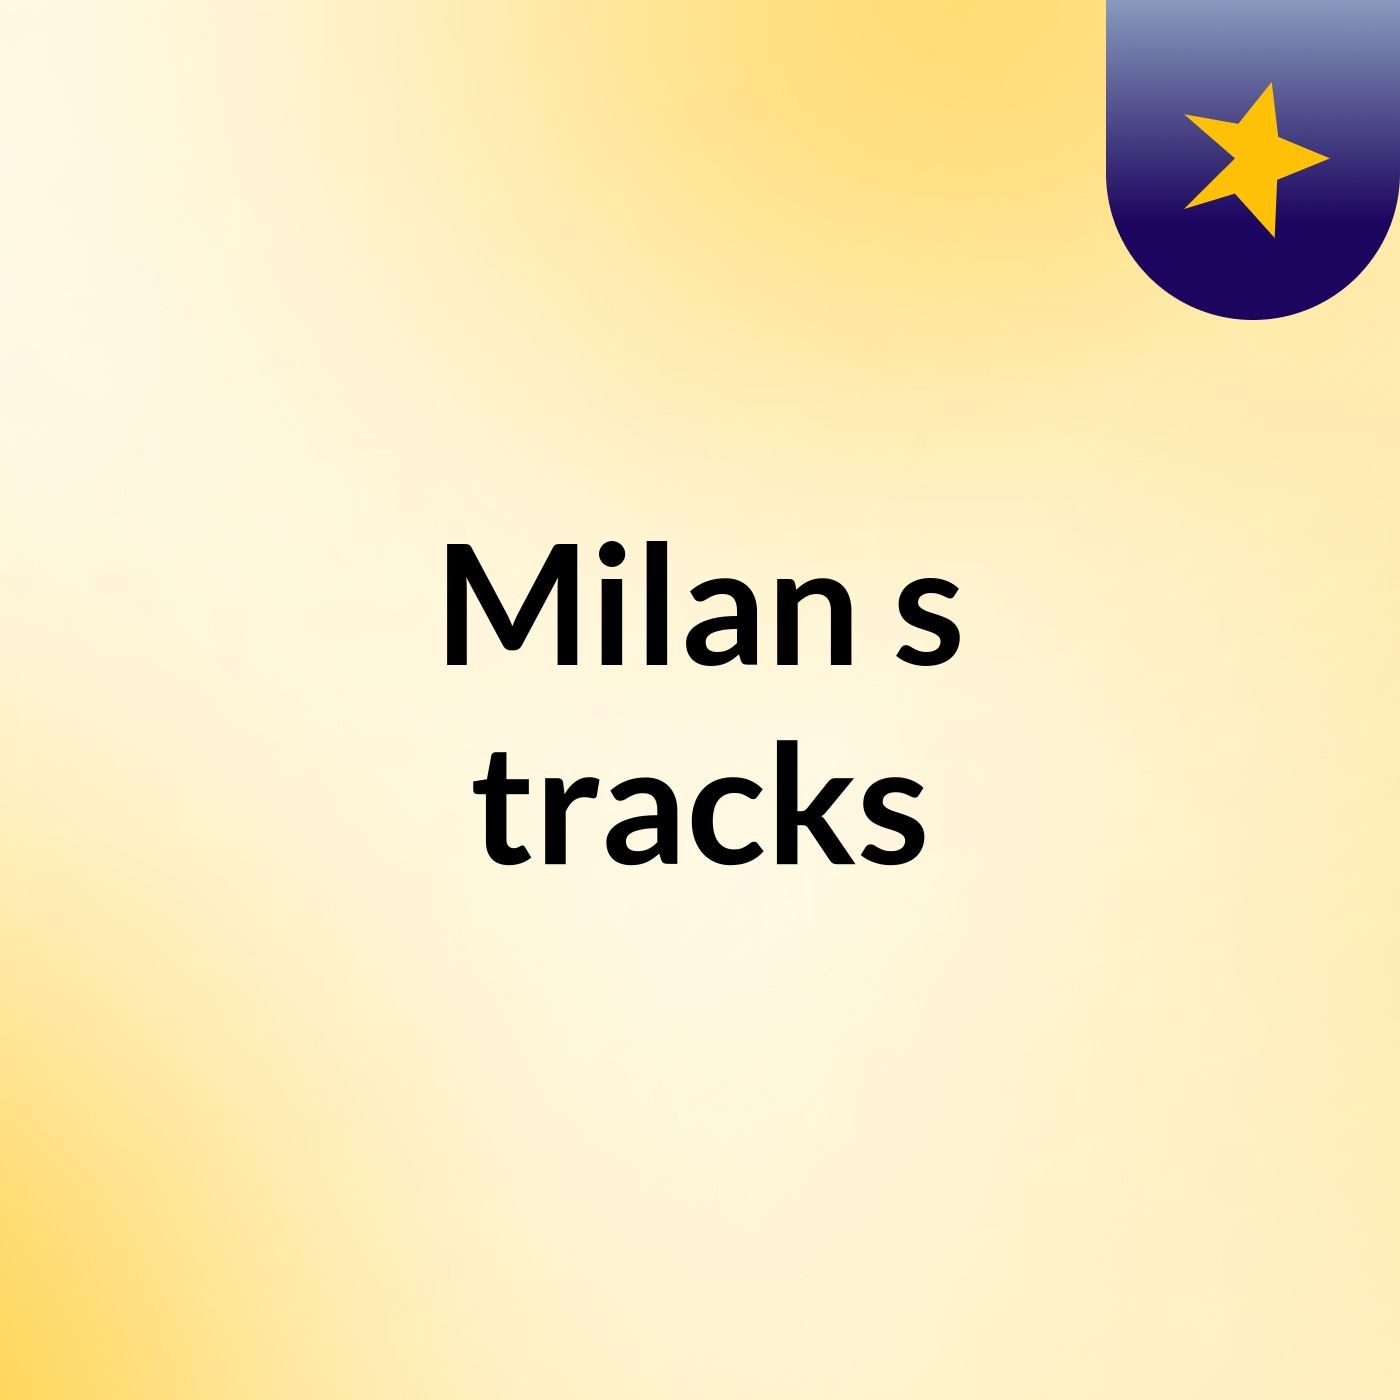 Milan's tracks